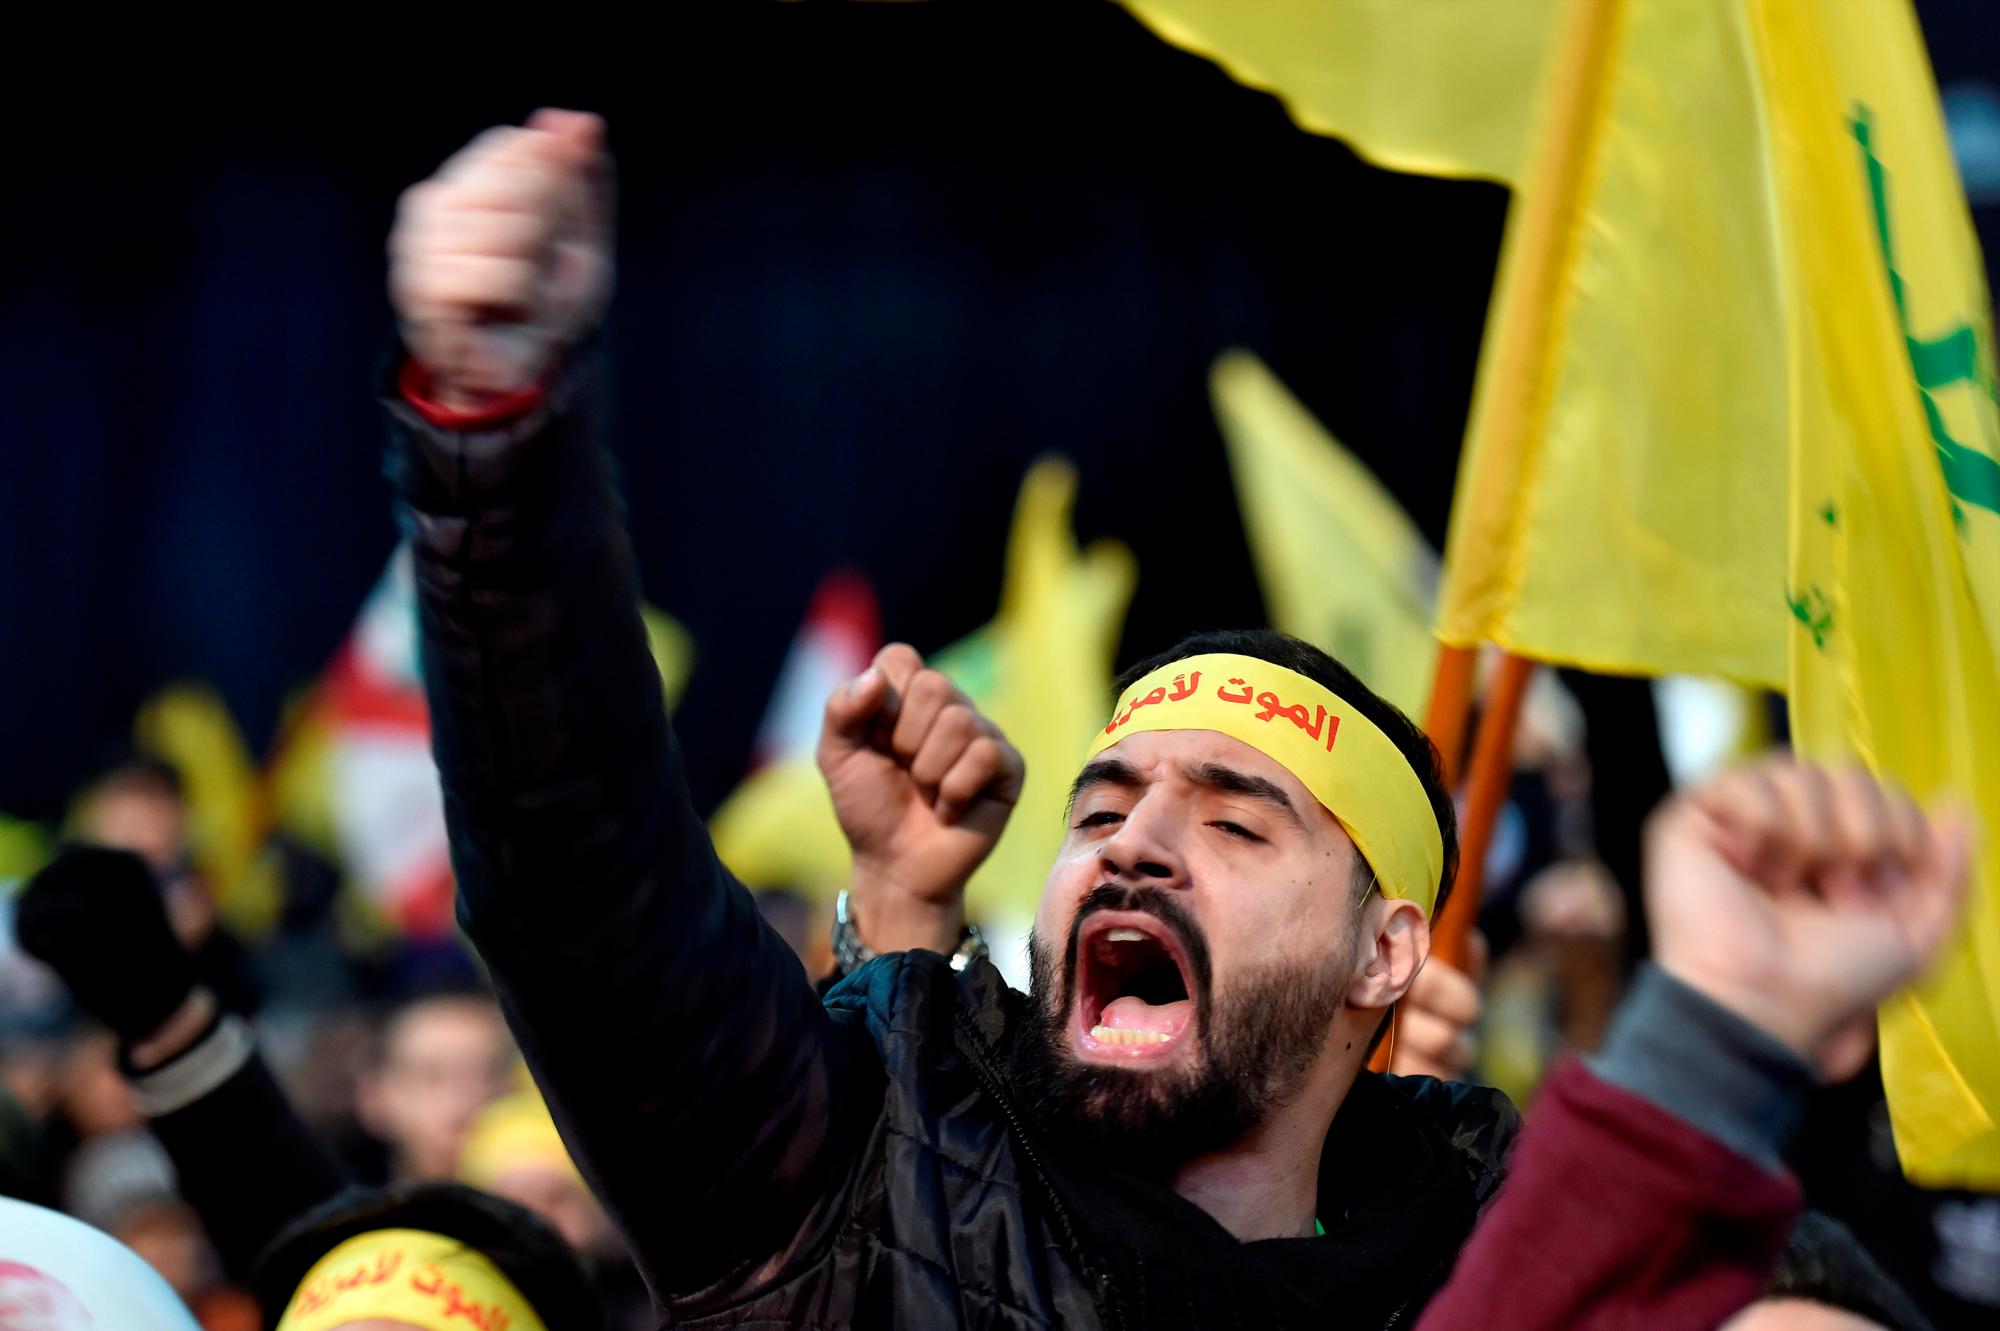 Los partidarios de Hezbollah llevan banderas de Hezbollah mientras gritan consignas ‘Muerte a América’ mientras el Secretario General de Hezbollah, Sayed Hassan Nasrallah, pronuncia un discurso durante una manifestación masiva en el suburbio sur de Beirut, Líbano , 05 de enero de 2020. El Pentágono de EE. UU. Anunció que el líder de la Fuerza Quds de Irán, Soleimani, y el comandante de la milicia iraquí Abu Mahdi al-Muhandis fueron asesinados el 03 de enero de 2020 tras un ataque aéreo estadounidense en el aeropuerto internacional de Bagdad. El ataque se produce en medio de las crecientes tensiones entre Teherán y Washington.